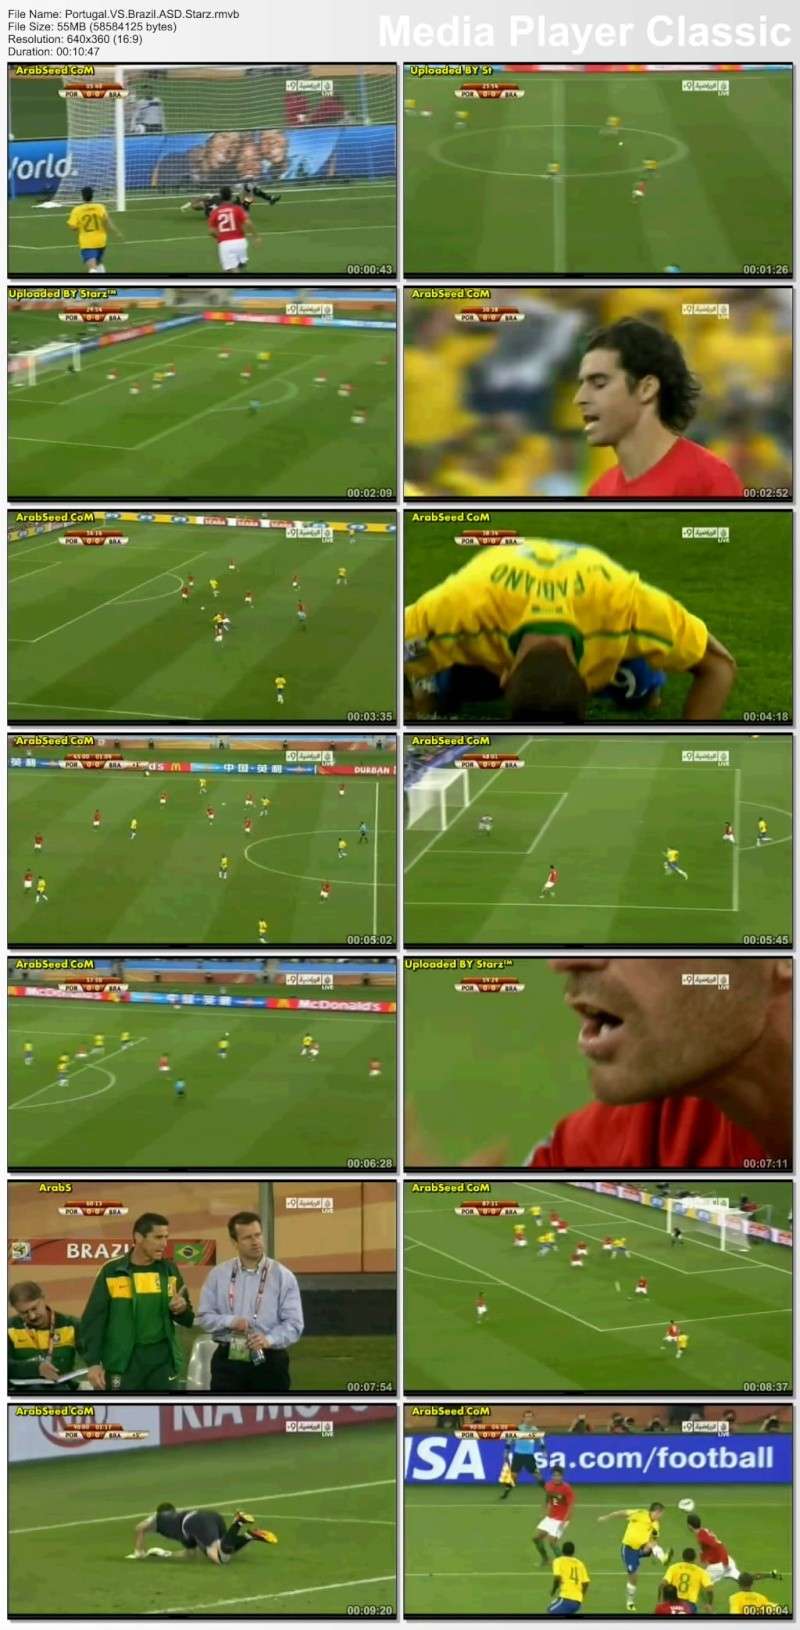 صريا :: ملخص مباراة البرازيل والبرتغال :: كأس العالم 2010 :: جودة عاليه على اكثر من سيرفر Thumb265